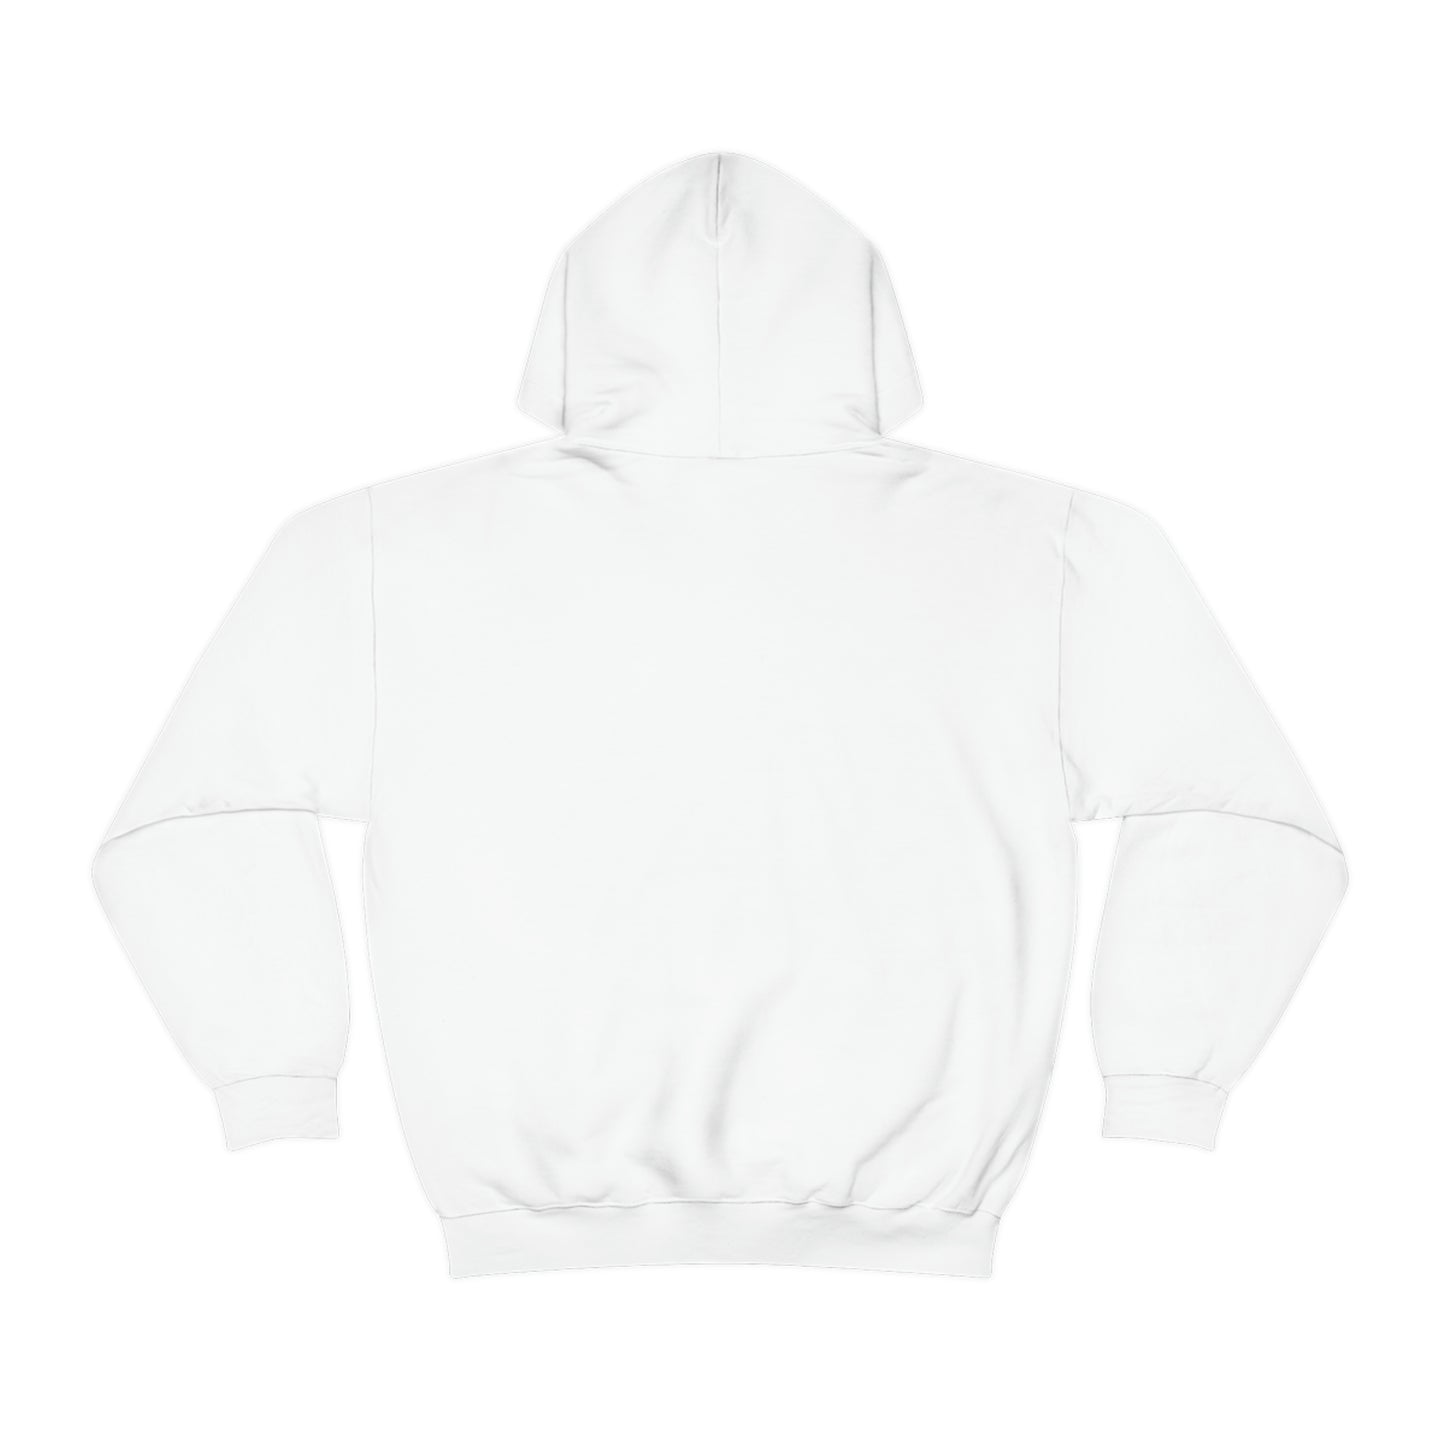 Instagram Story Hooded Sweatshirt